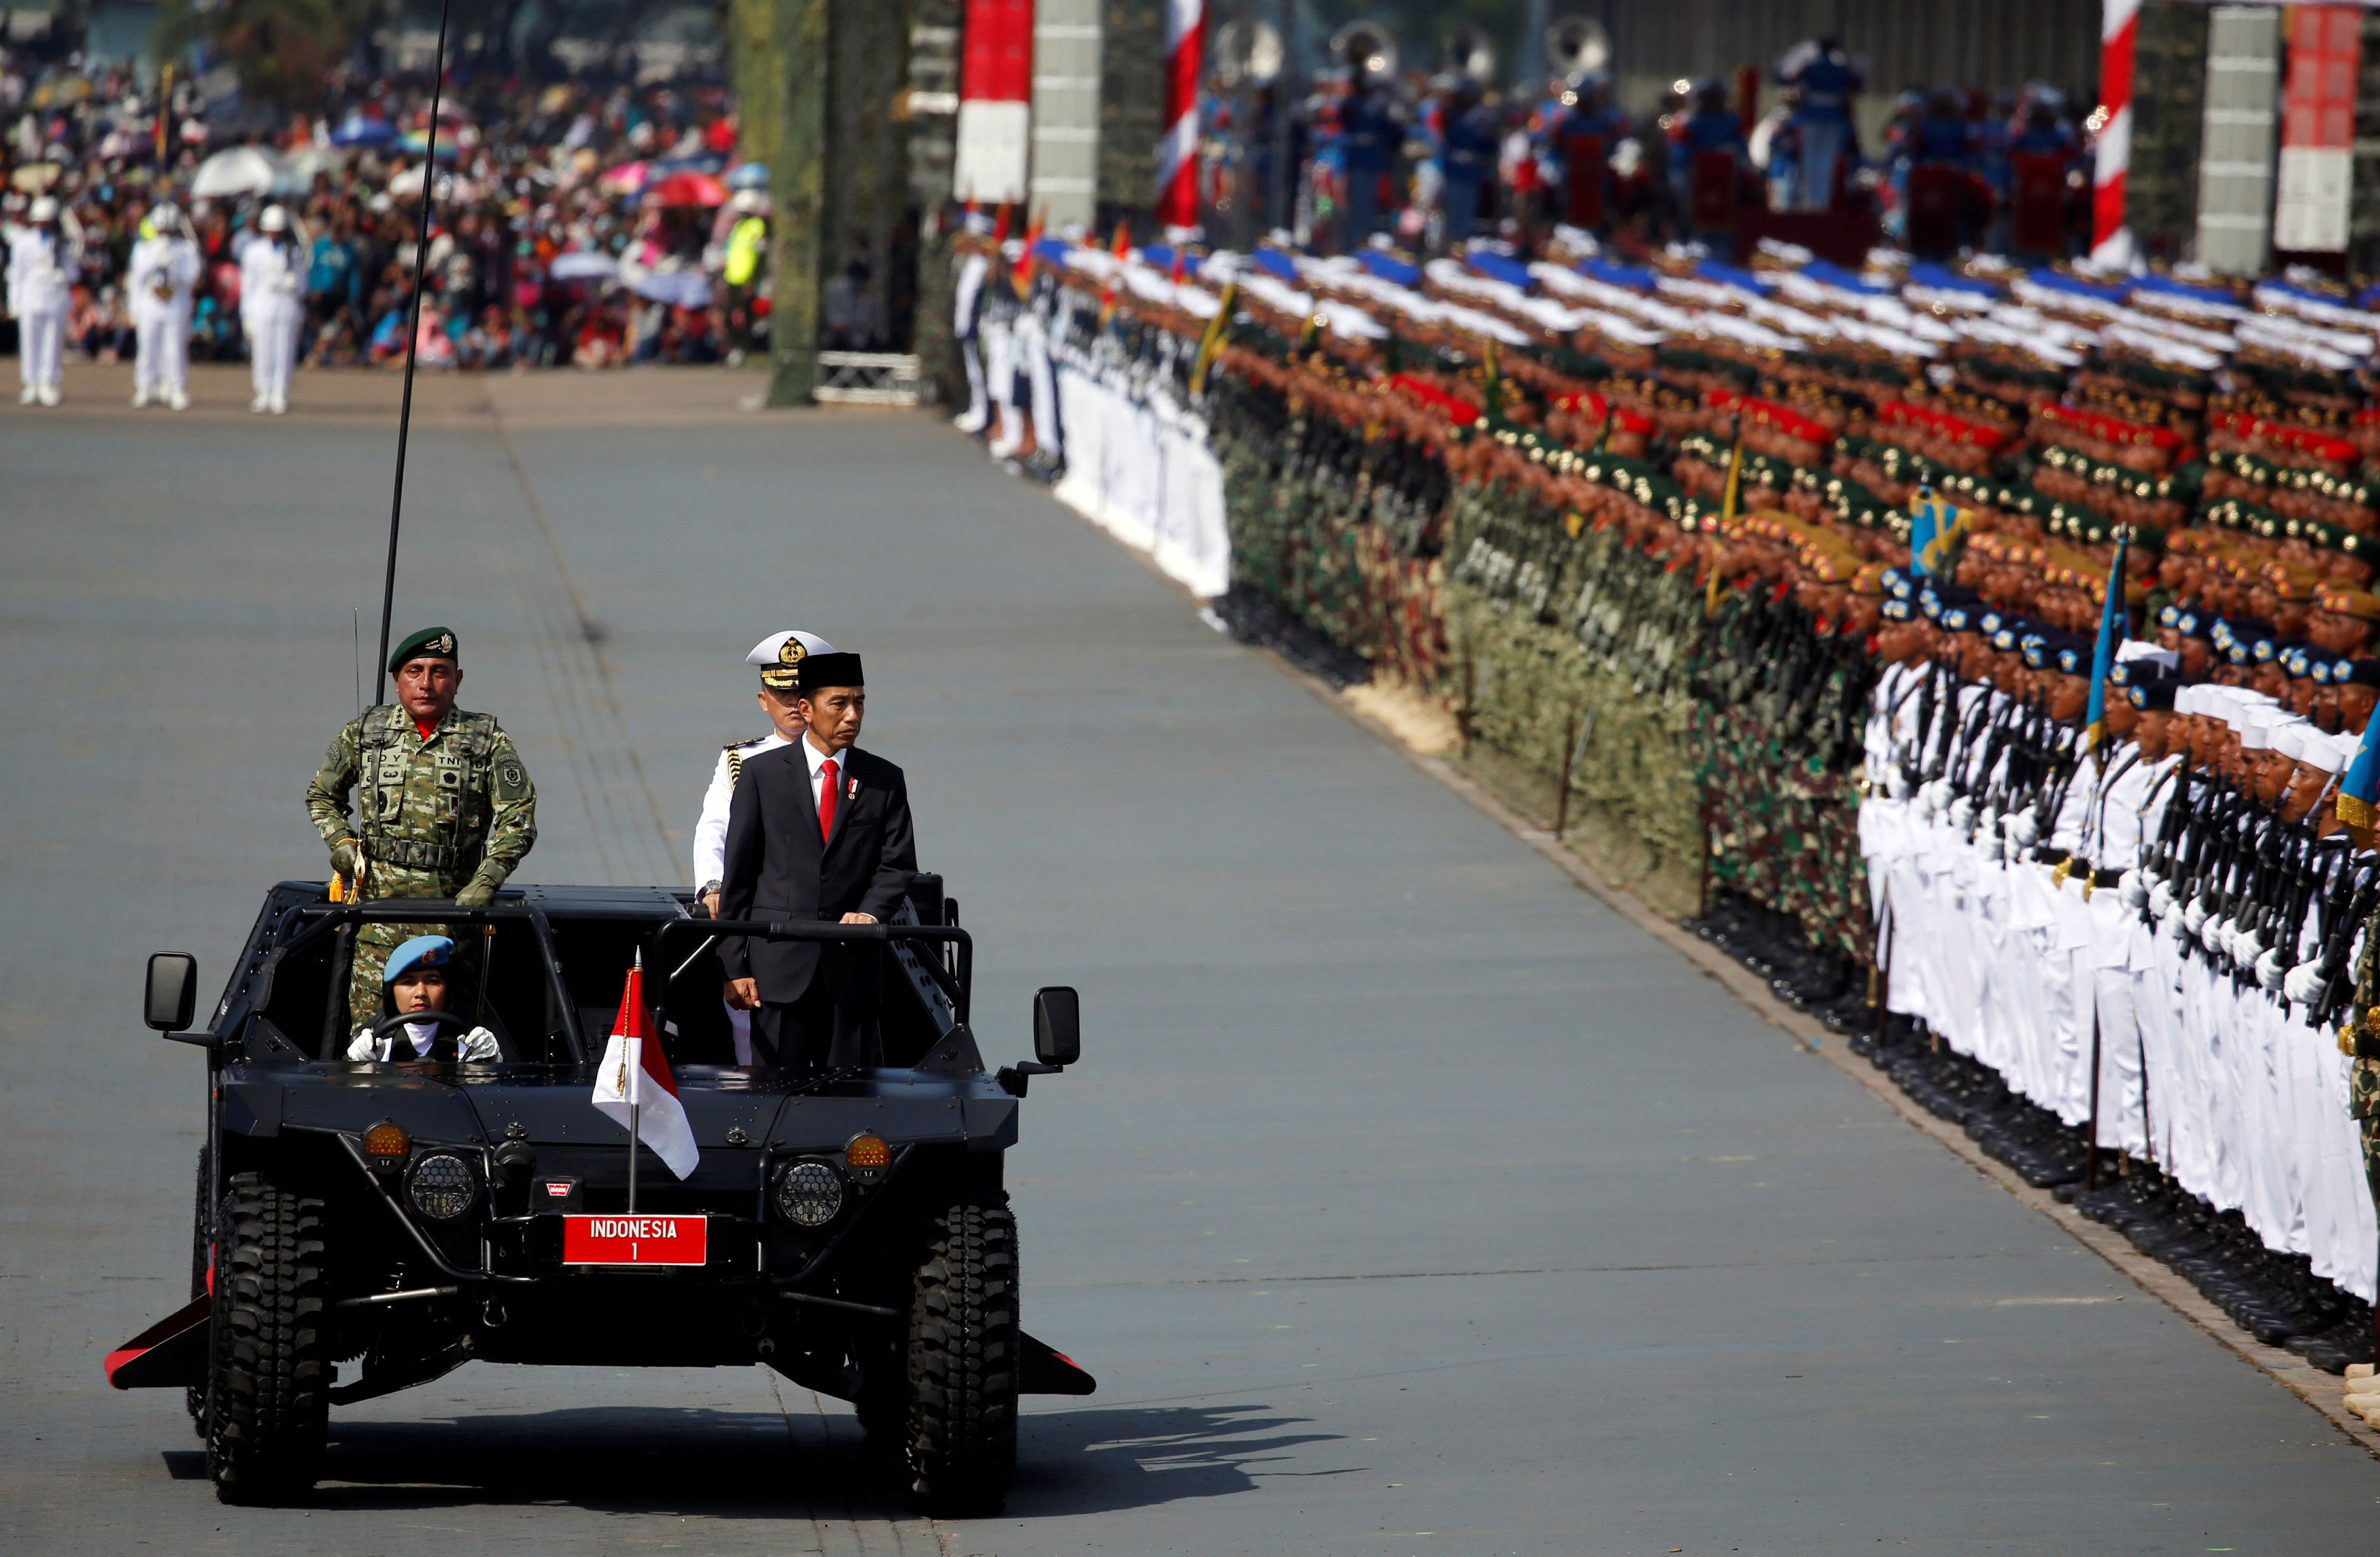 رئيس إندونيسيا يستعرض القوات قبل بدء العروض العسكرية